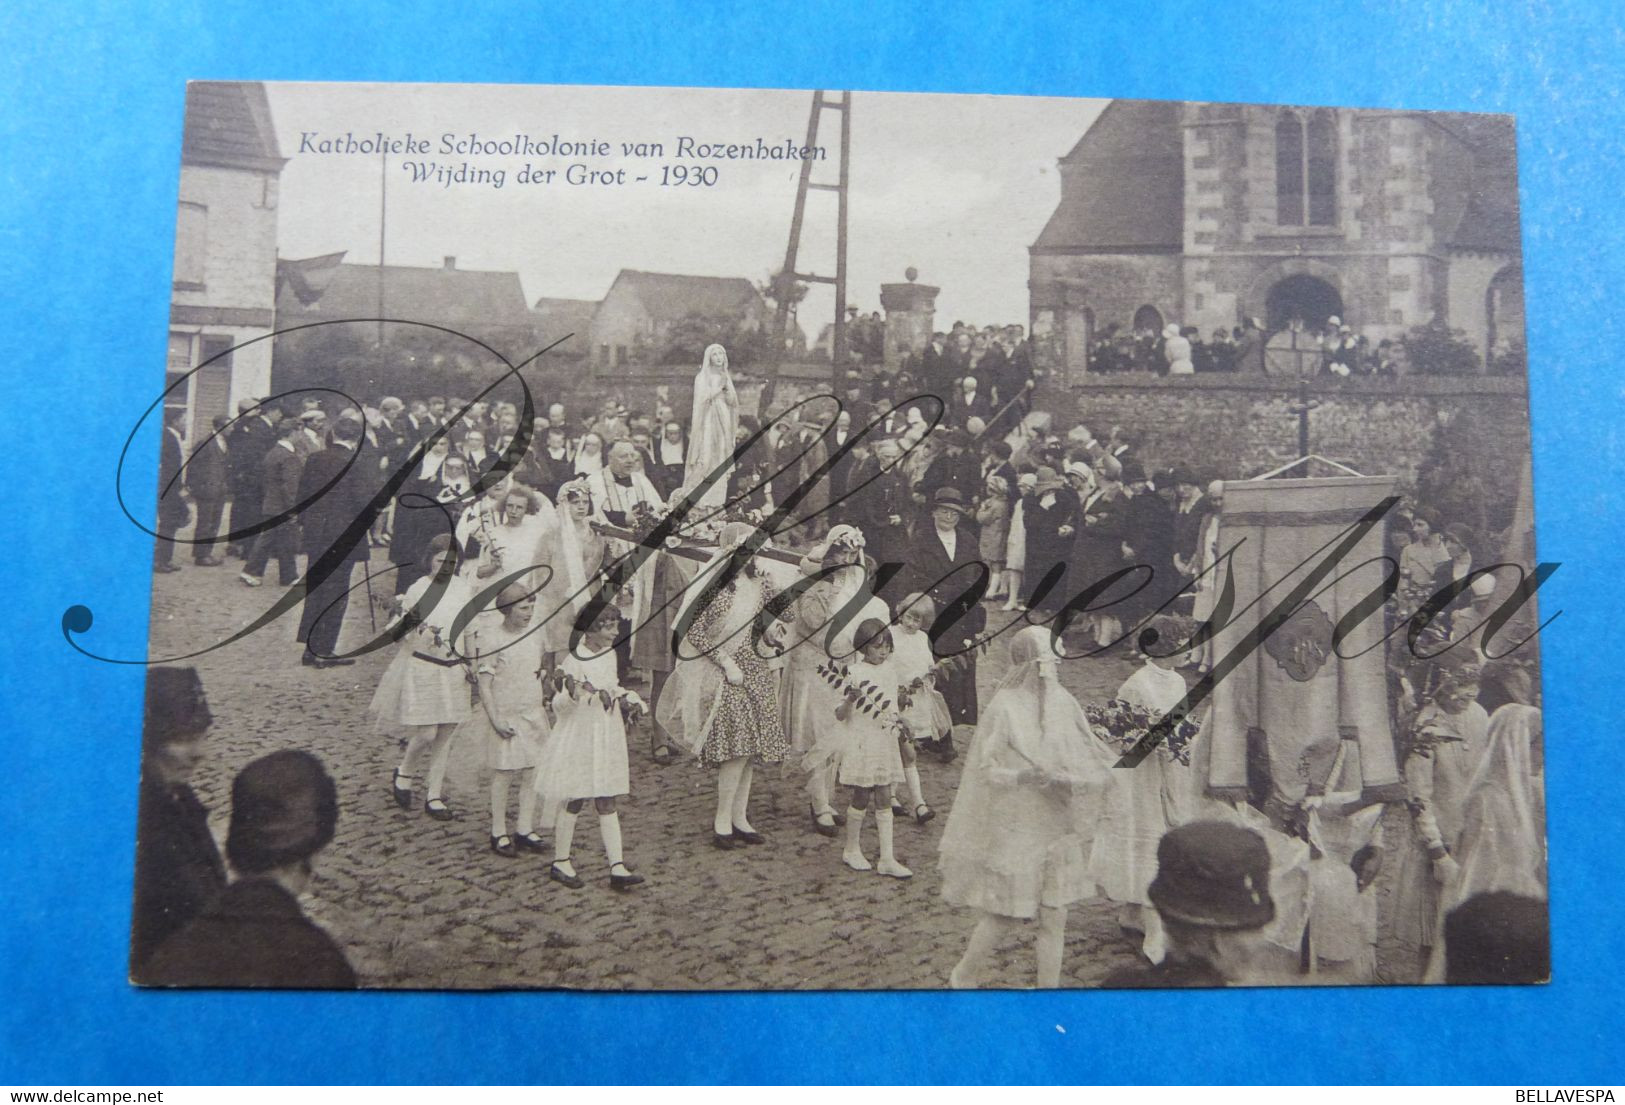 Russeignies Katholieke Schoolkolonie Van Rozennaken. Wijding Der Grot 1930 Mont-de-l'Enclus - Mont-de-l'Enclus